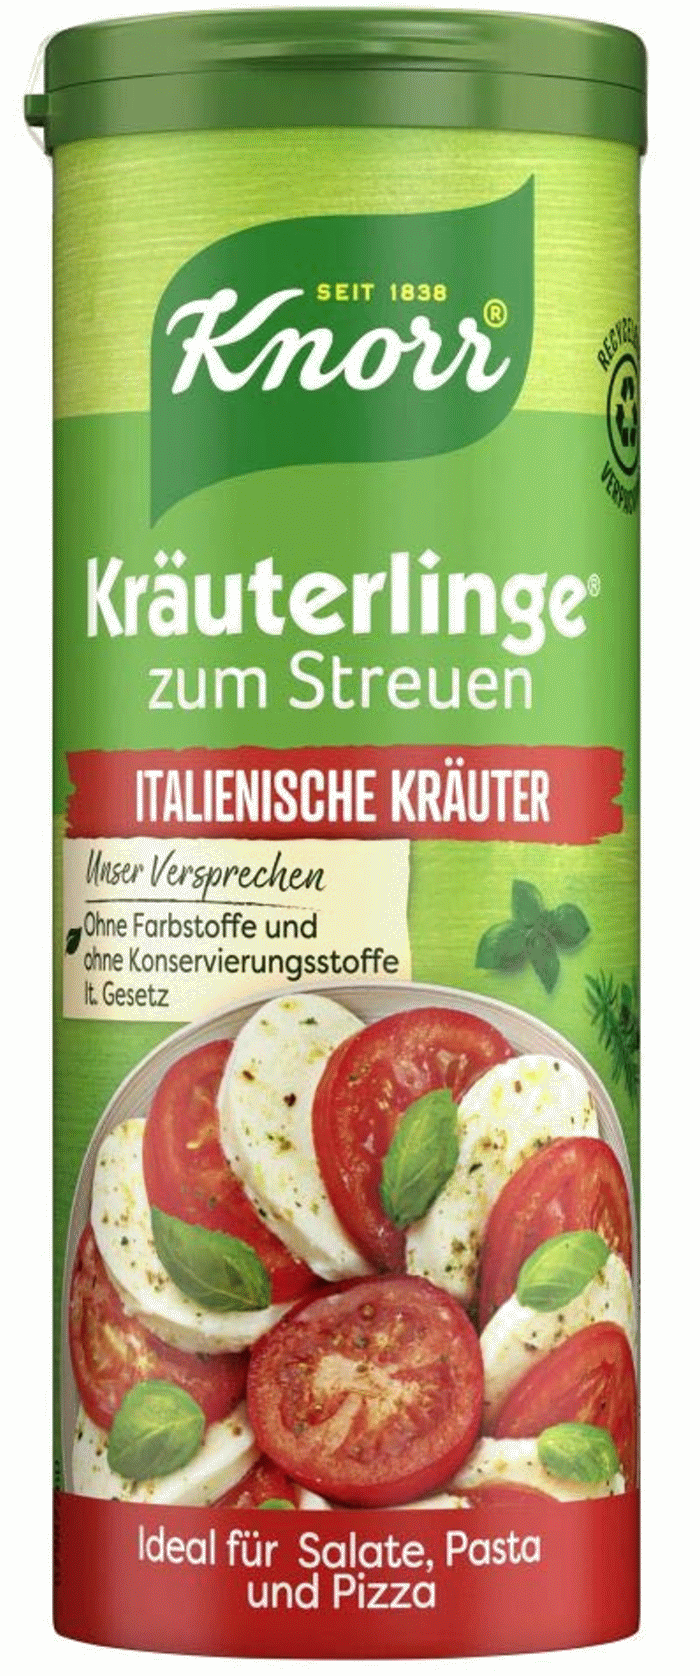 Knorr Kräuterlinge Italienische Kräuter 60g / 2.1oz